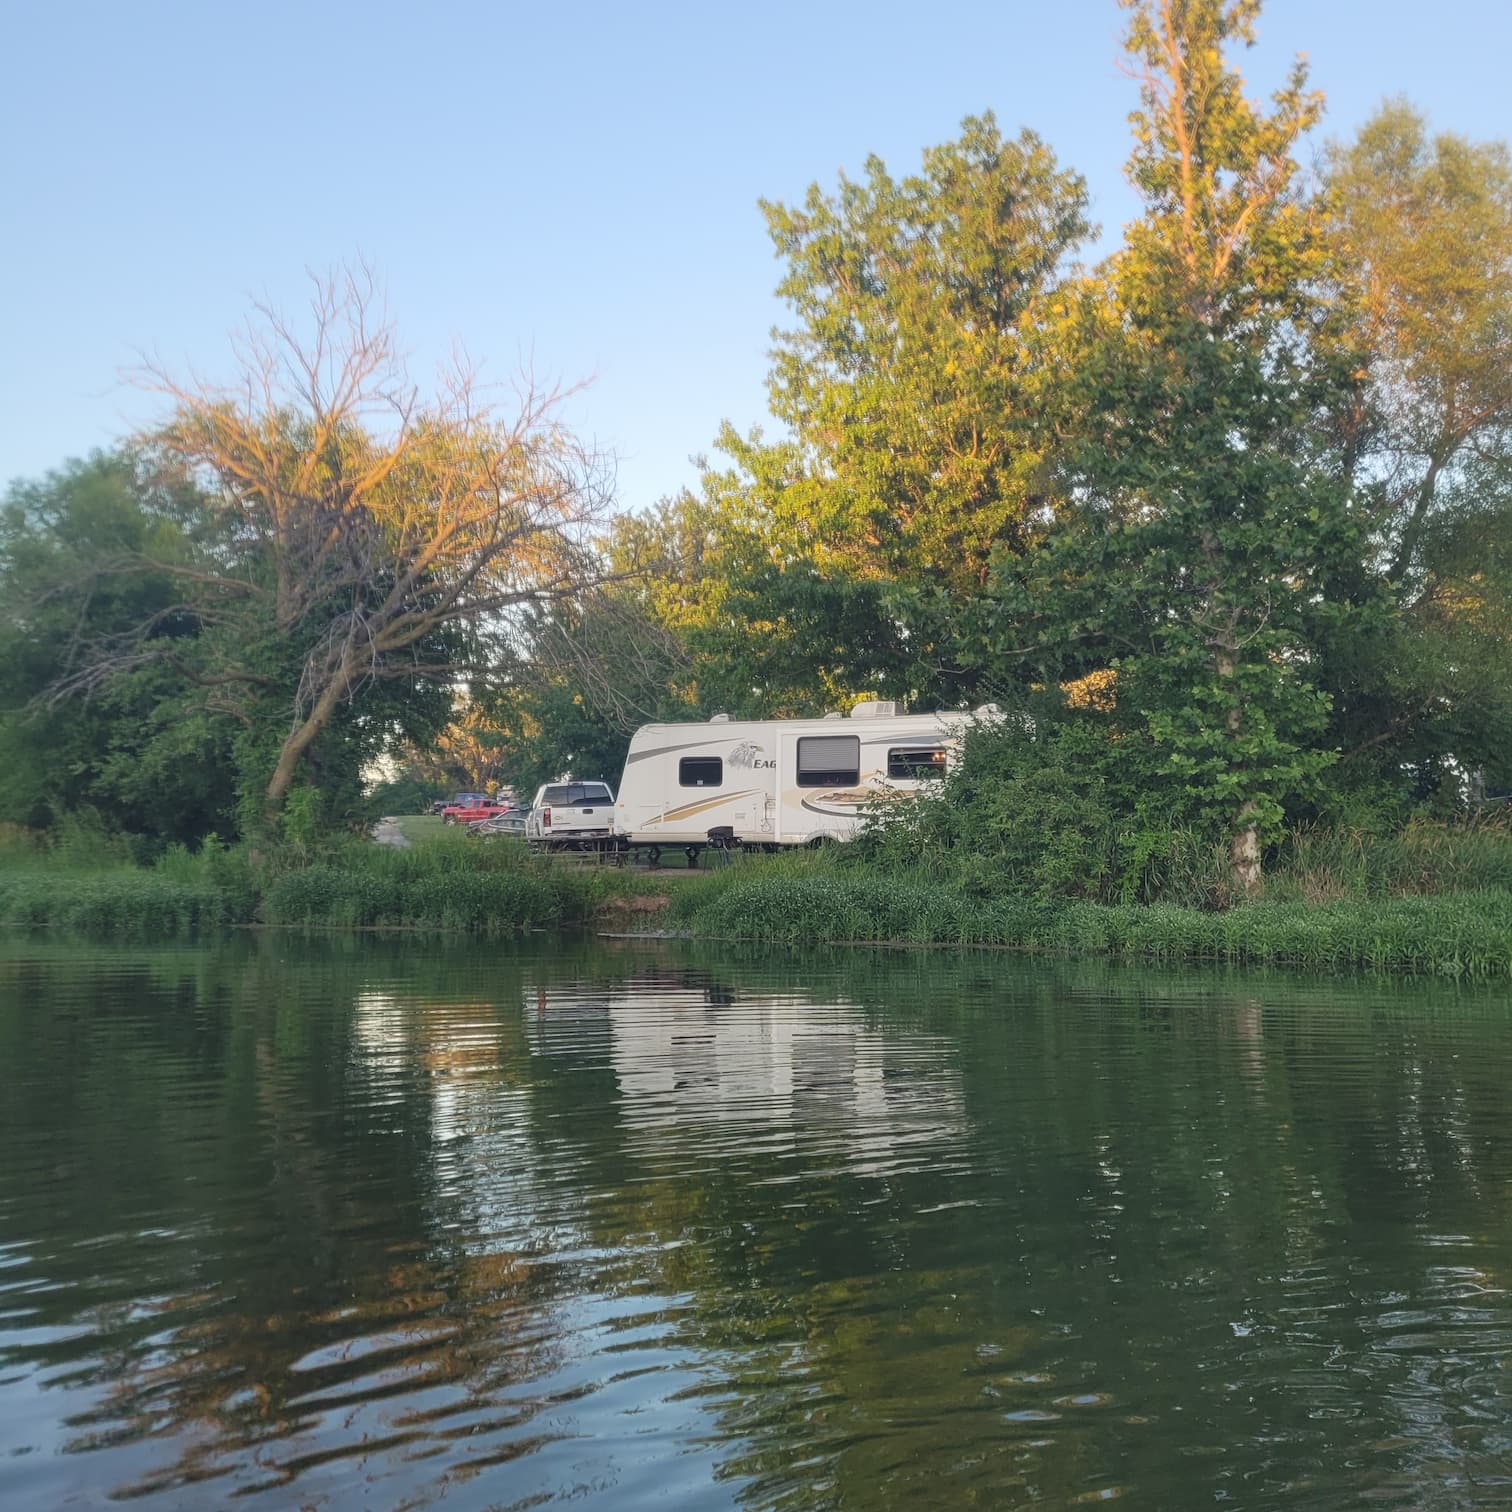 Comlara Park Campground Guide: Lakeside Fun in Central IL